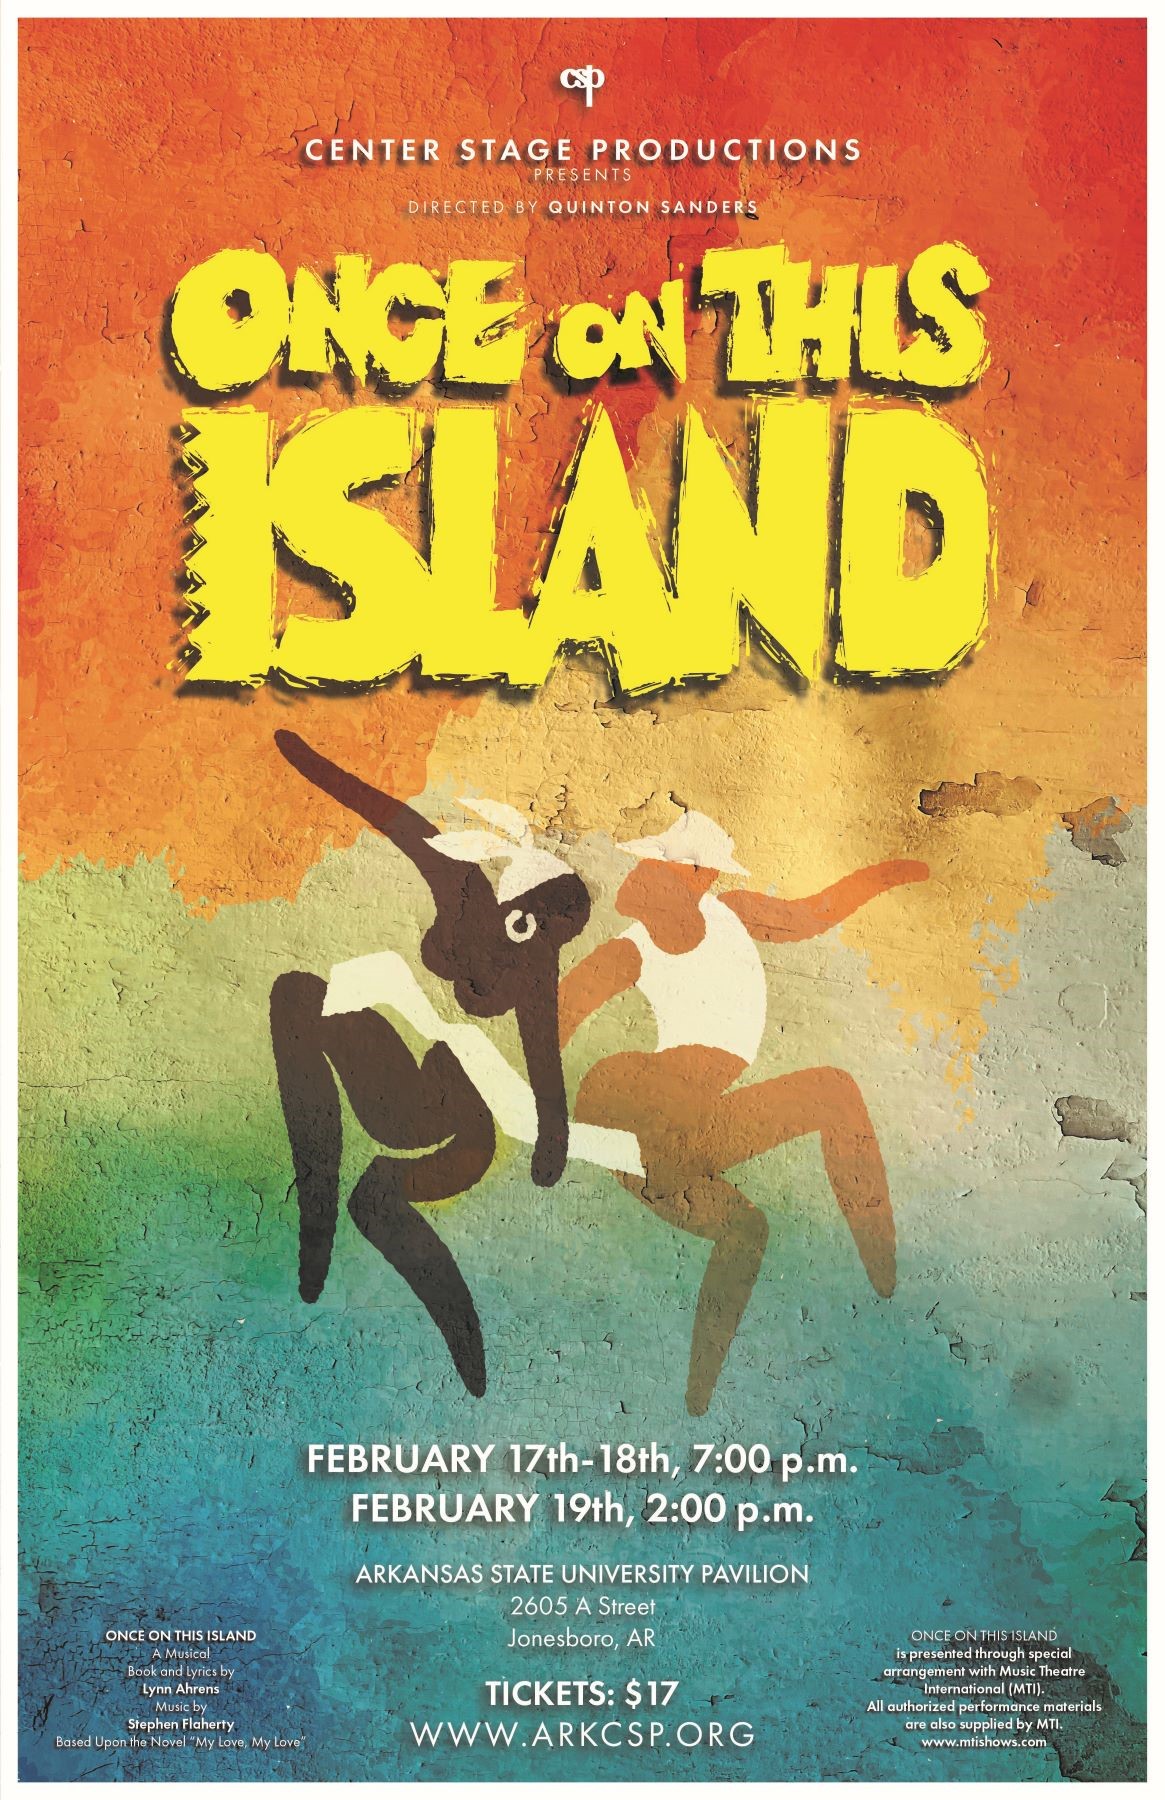 Once On This Island  on feb. 19, 14:00@ASU pavilion - Compra entradas y obtén información enCenter Stage Productions 